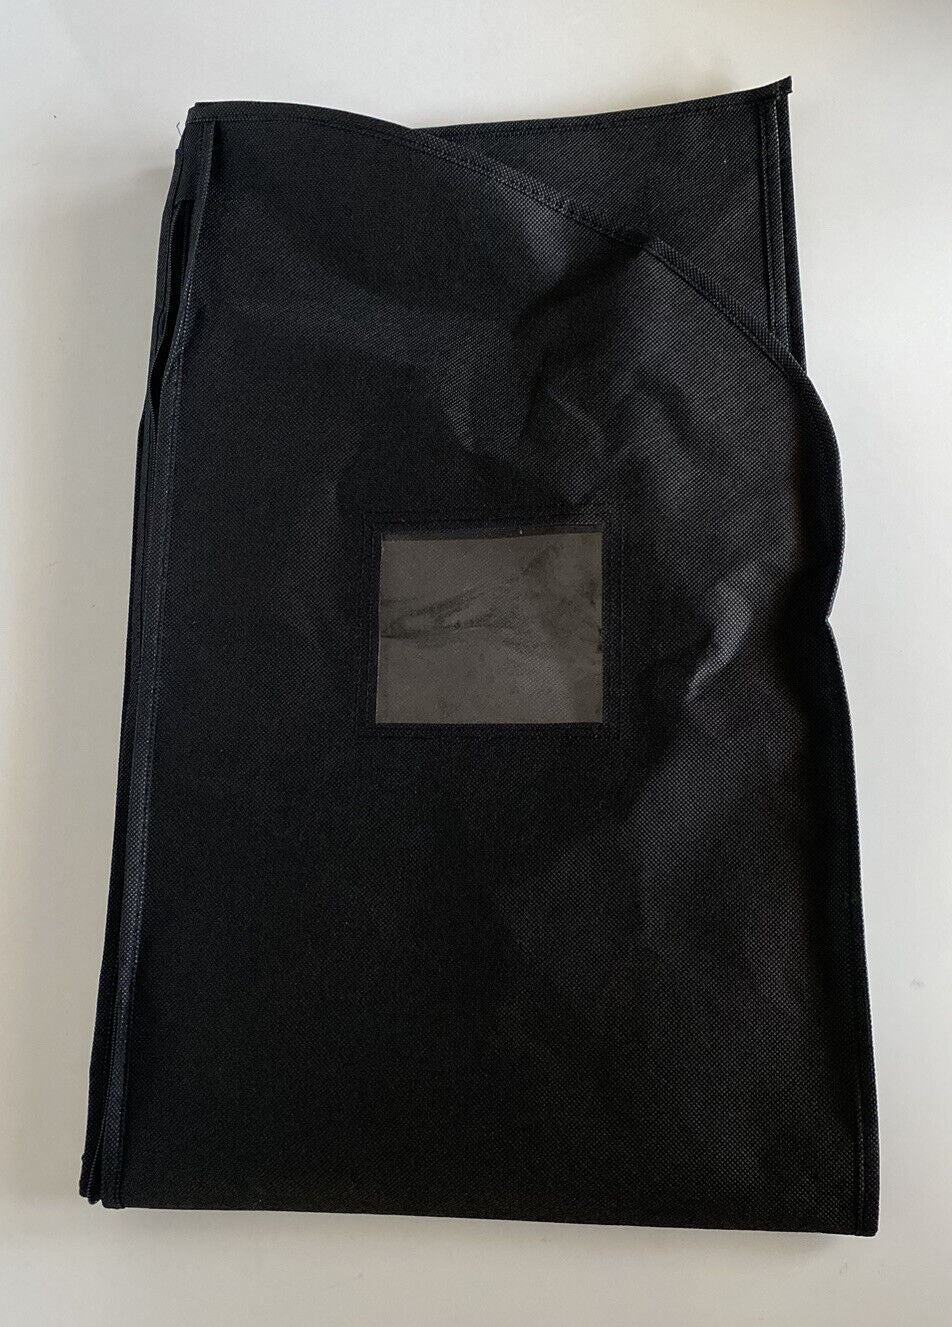 Brand New Garment Bag Black 40" L x 24" W